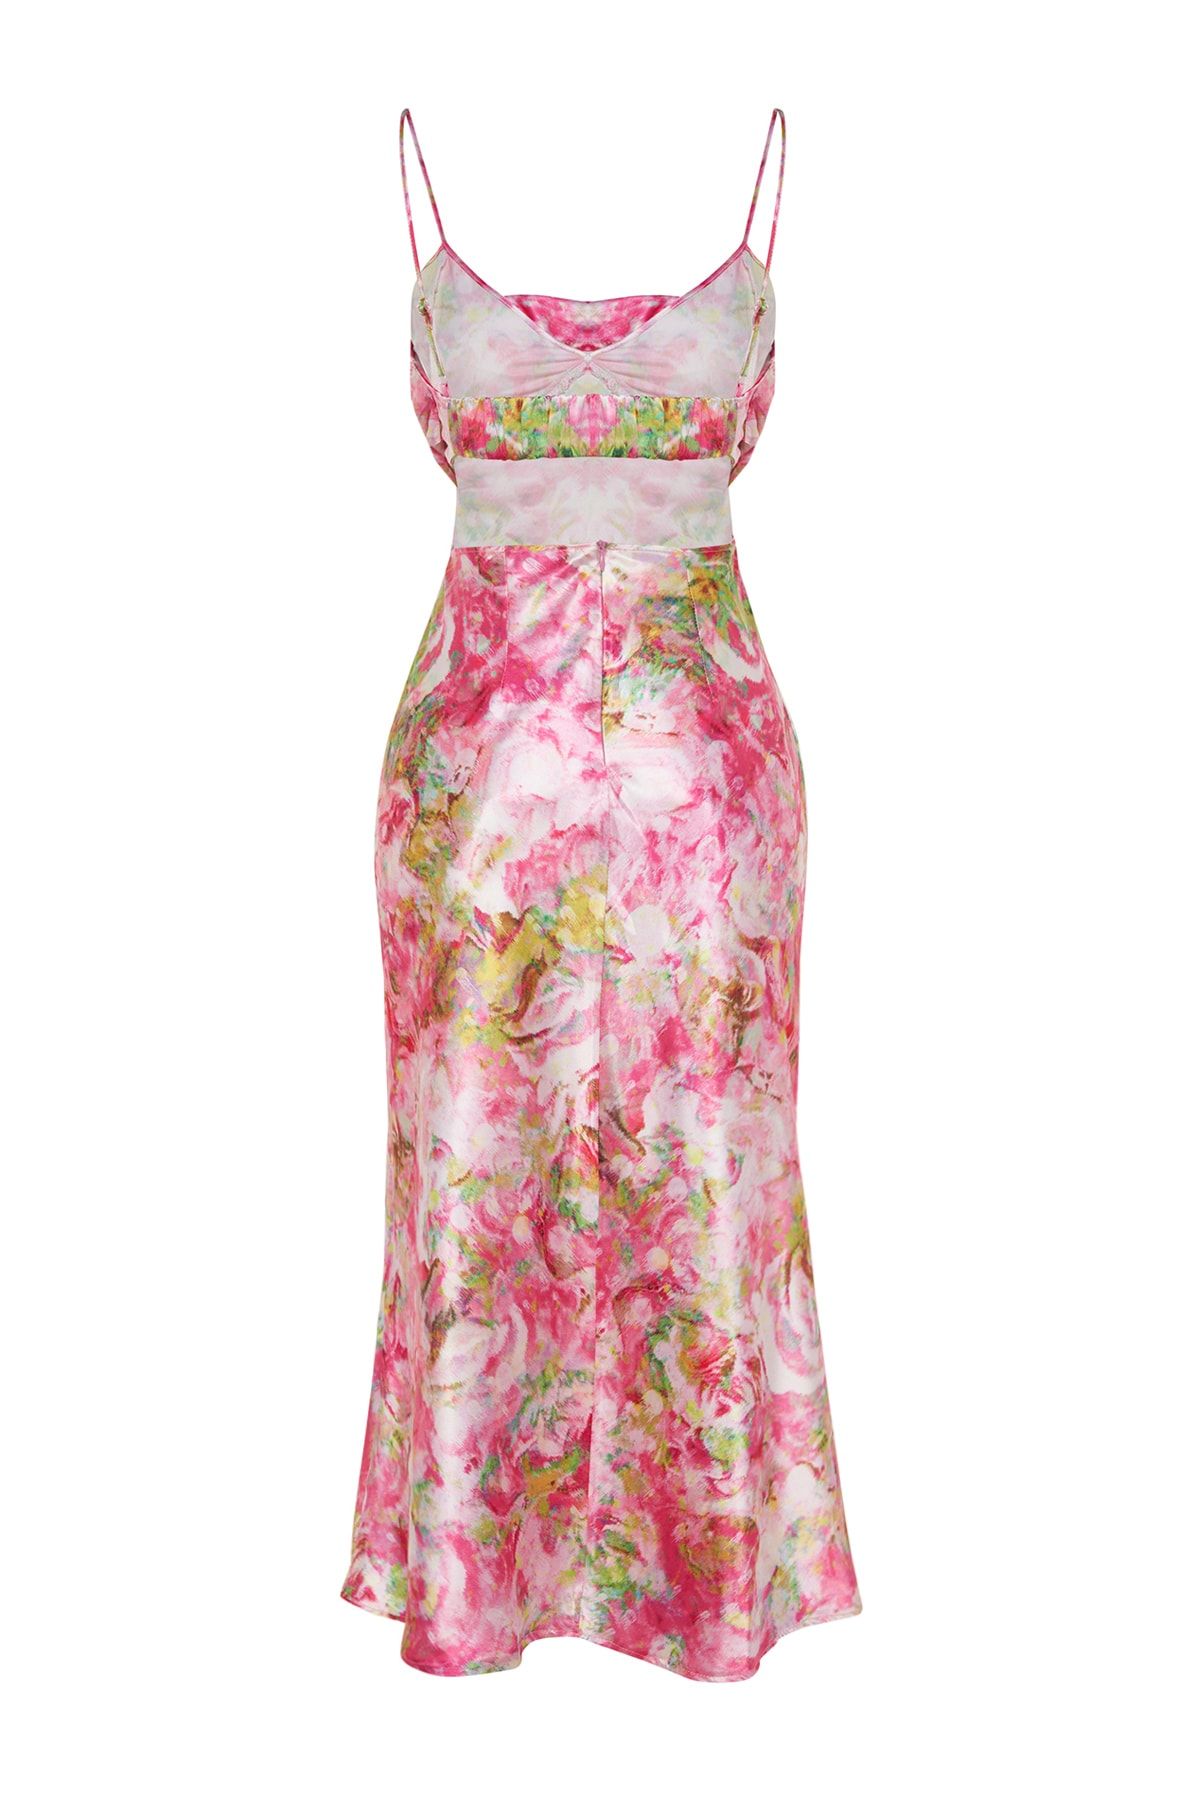 Trendyol Collection Multicolored Woven Satin Floral Patterned Elegant Evening  Dress TPRSS23EL00305 - Trendyol